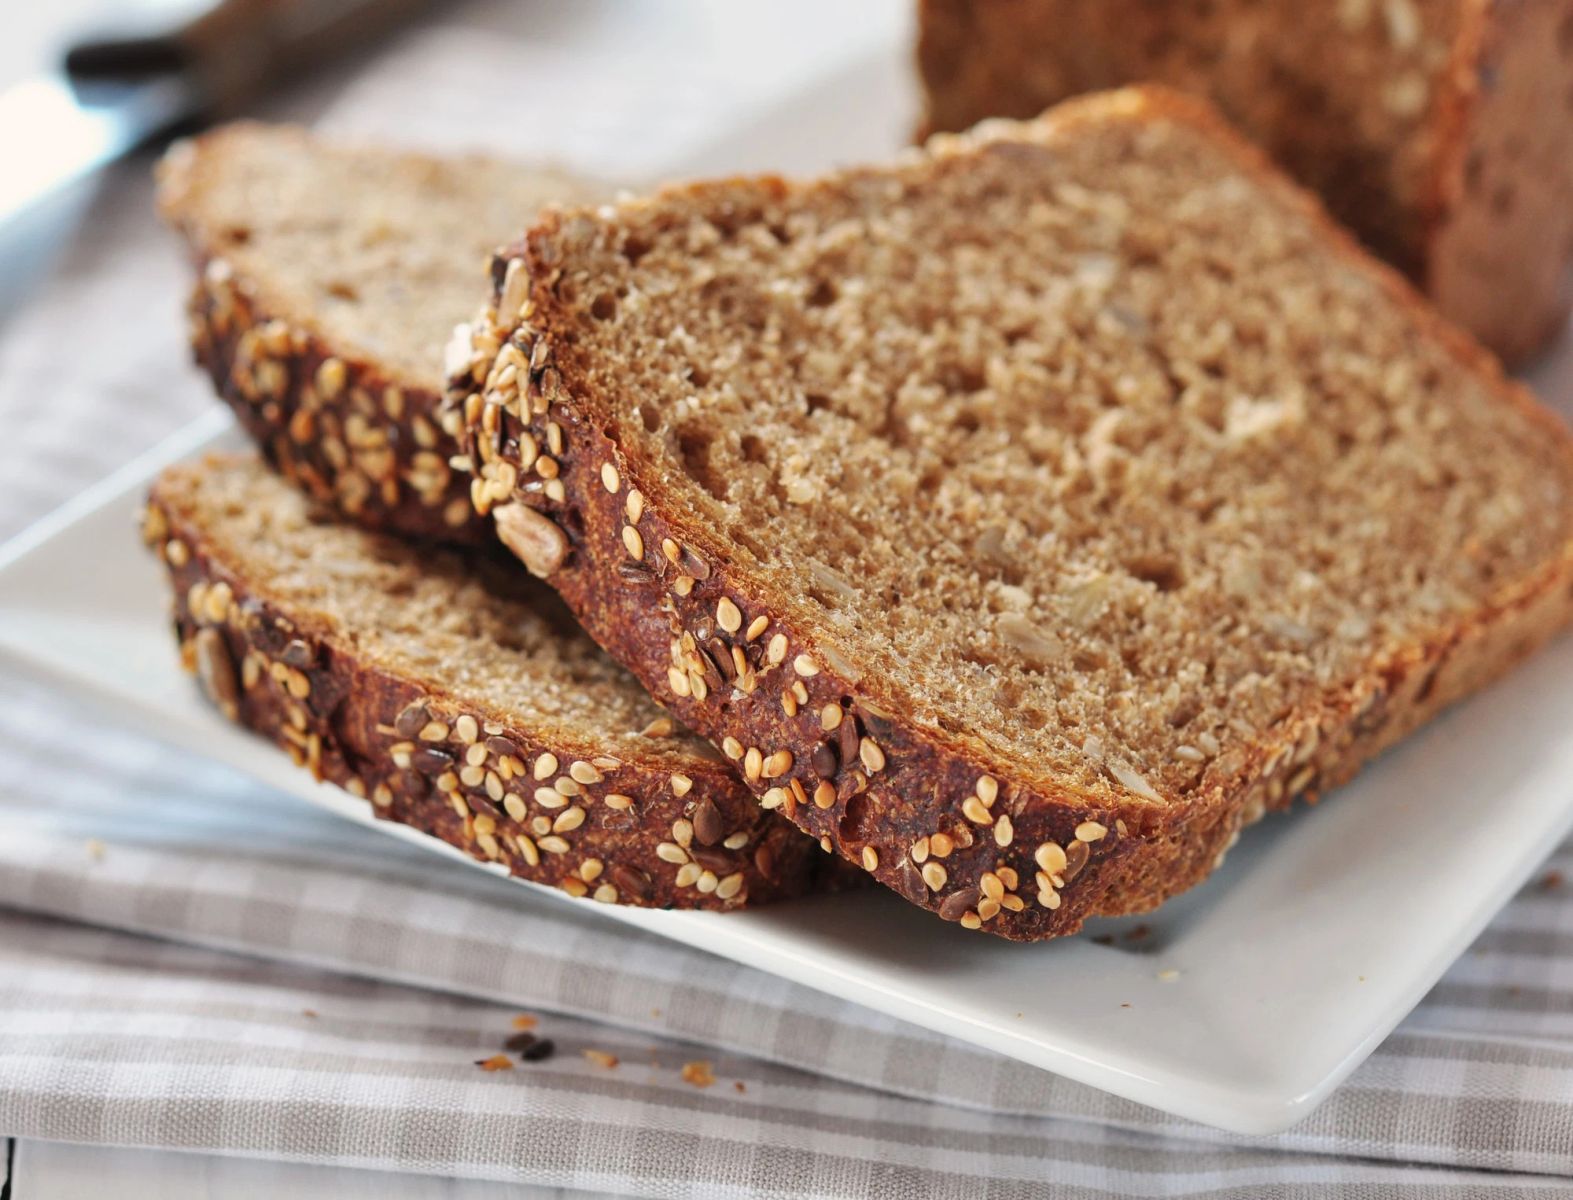 Cụ thể, trong 100g bánh mì đen có chứa khoảng 259 kcal